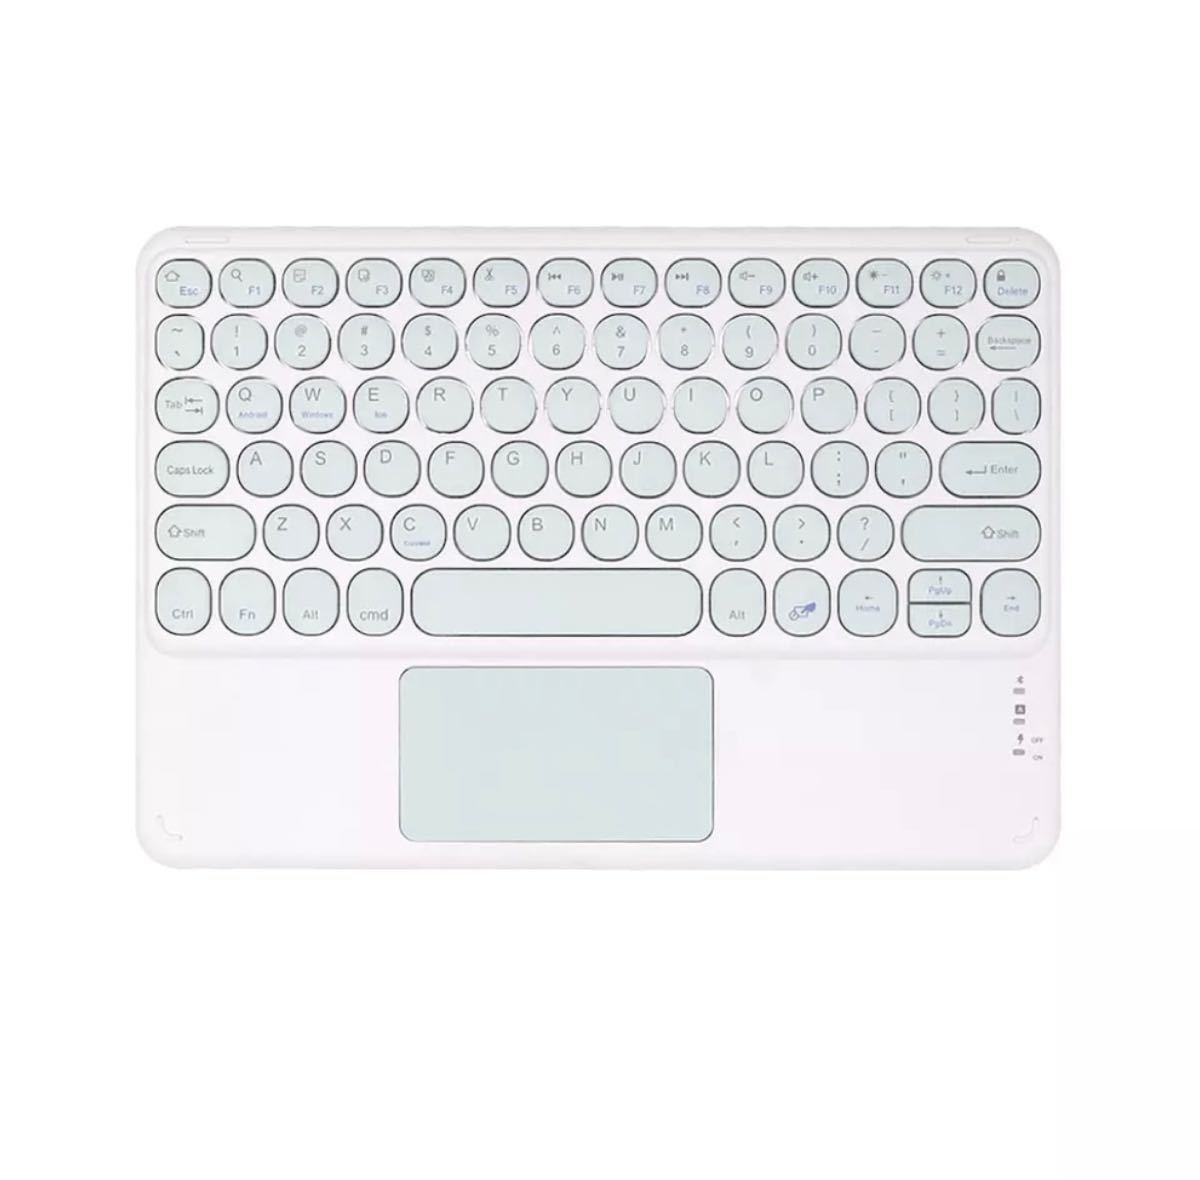 かわいい★丸型キーボード/ミントグリーン/マルチデバイスにBluetooth接続 Apple ワイヤレスキーボード